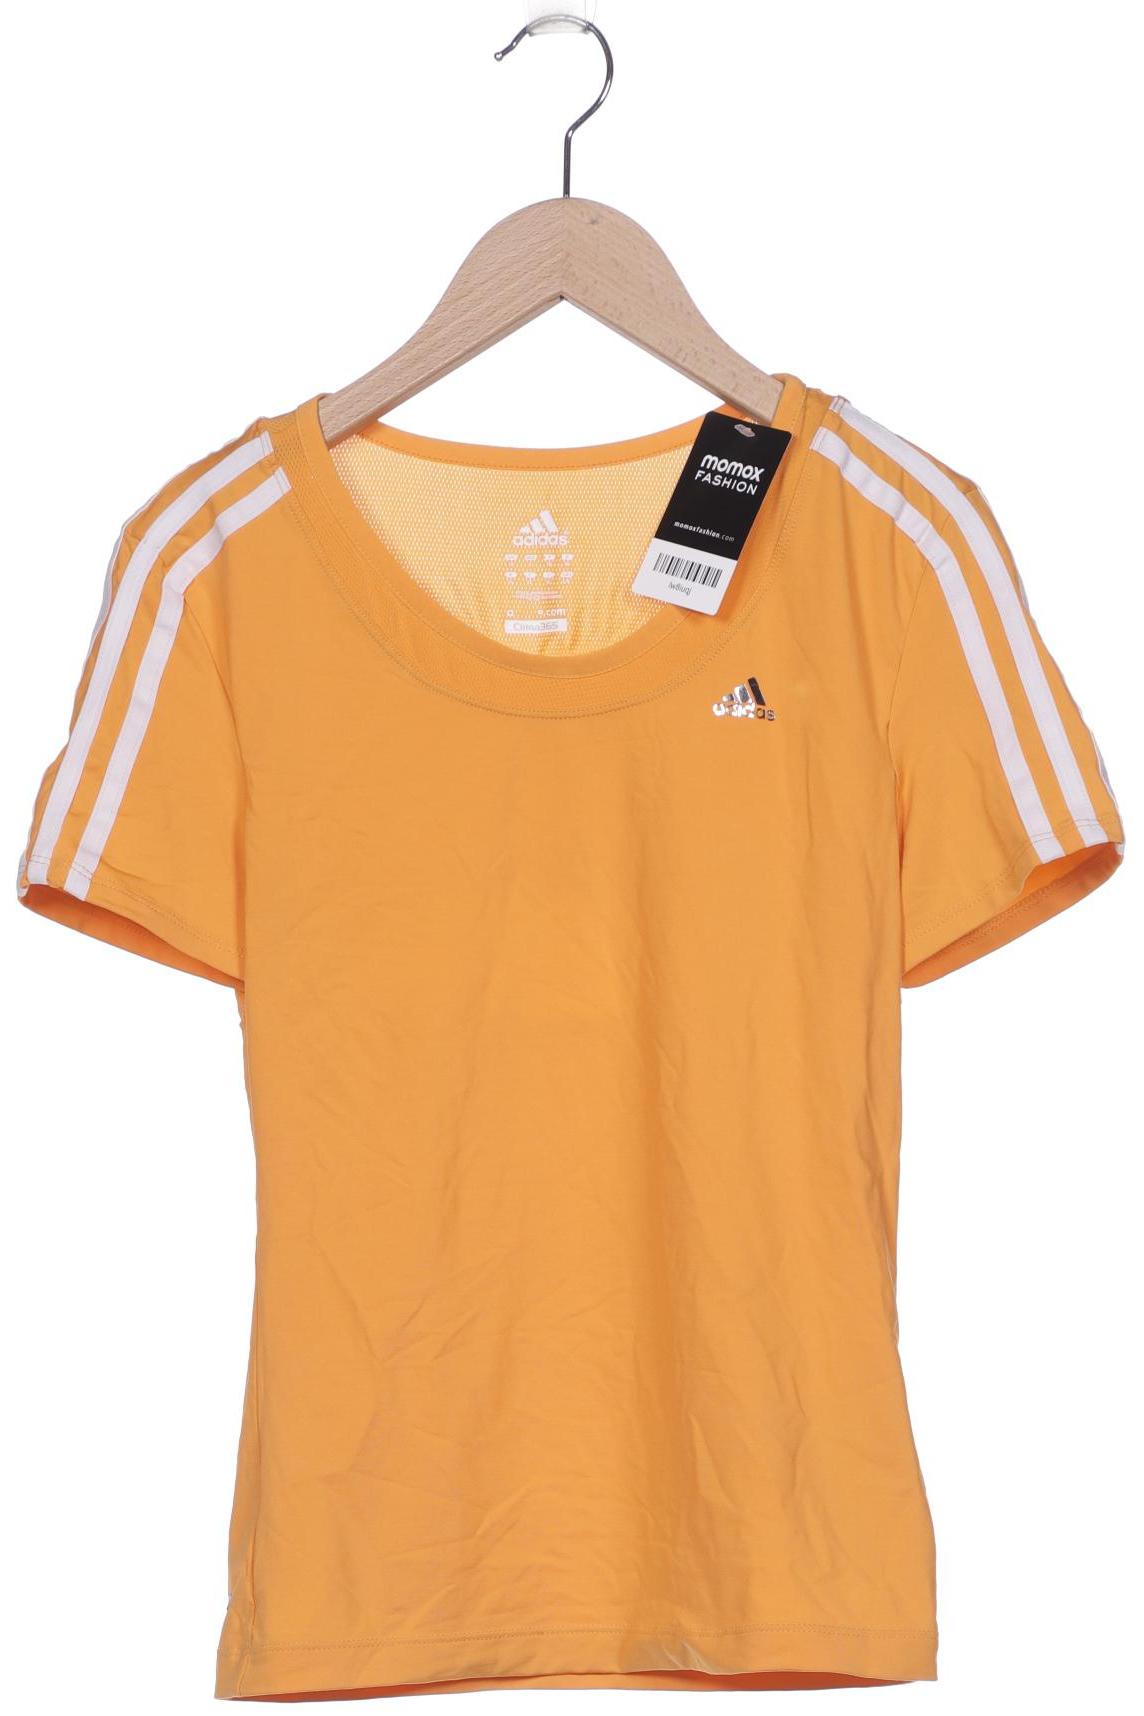 adidas Damen T-Shirt, orange von Adidas